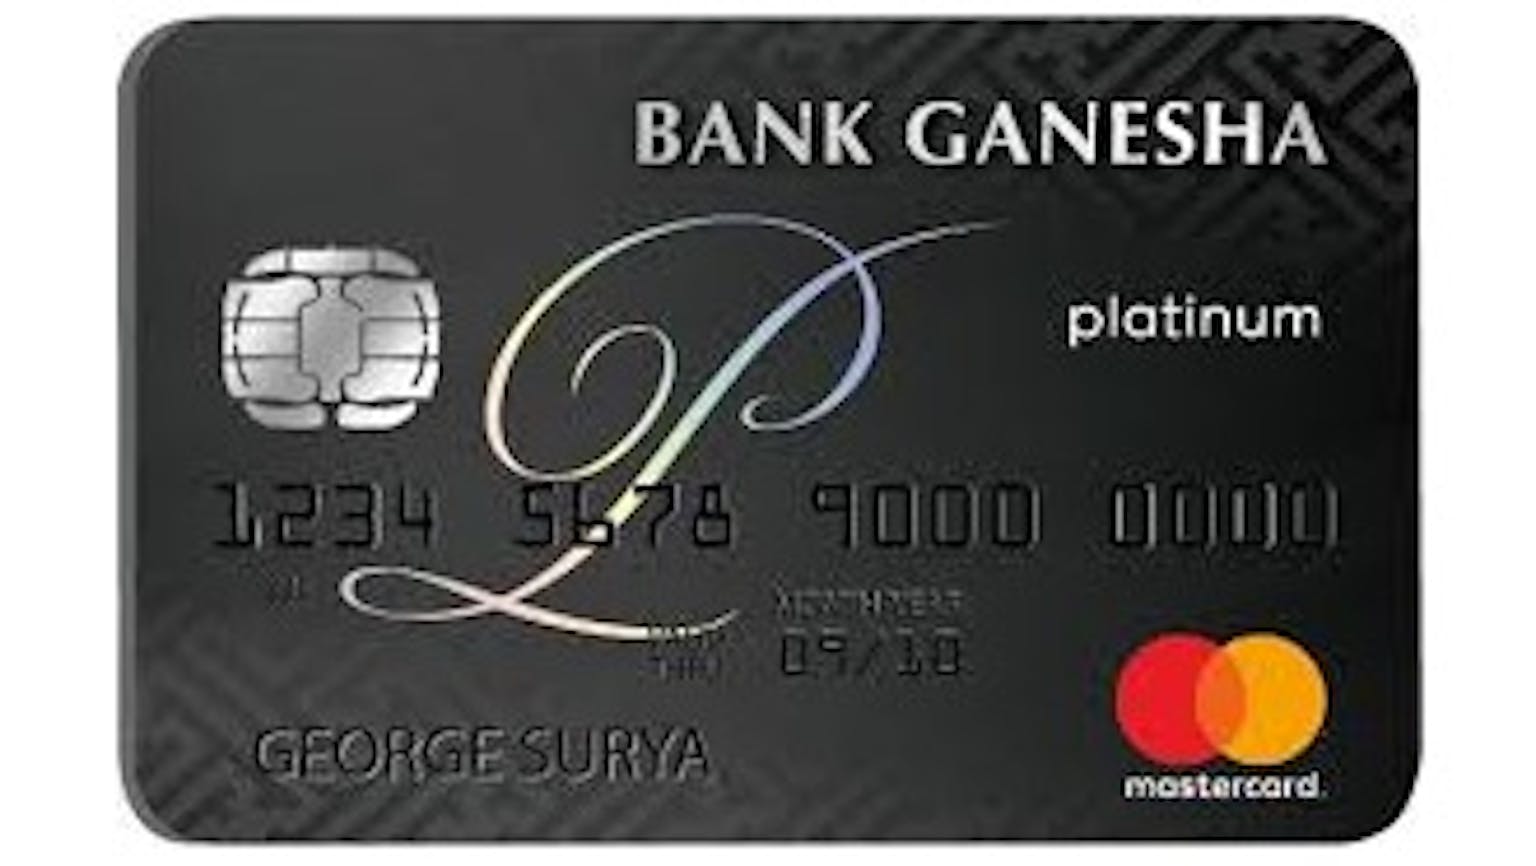 Bank Ganesha Mastercard Platinum (Sudah Tidak Tersedia)